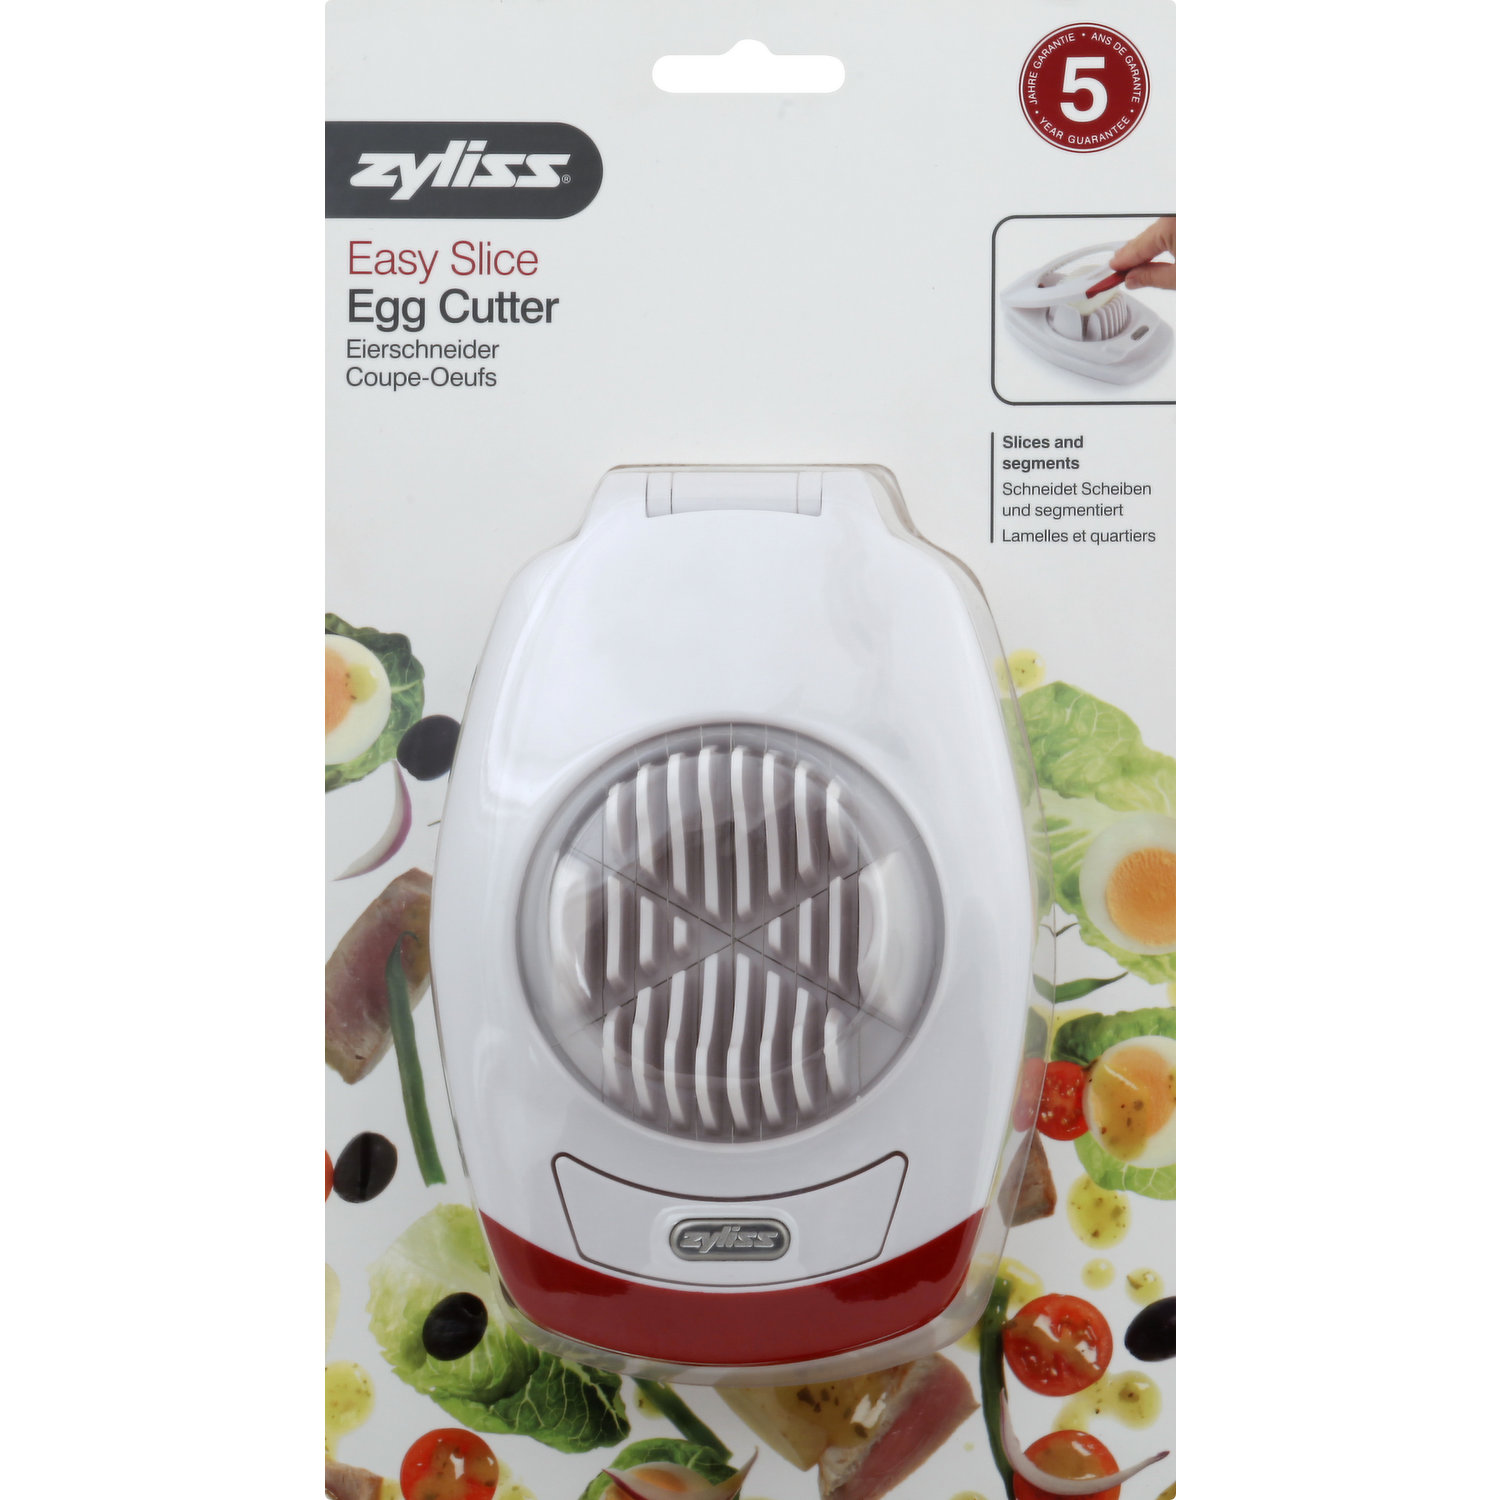 Zyliss Egg Cutter, Easy Slice